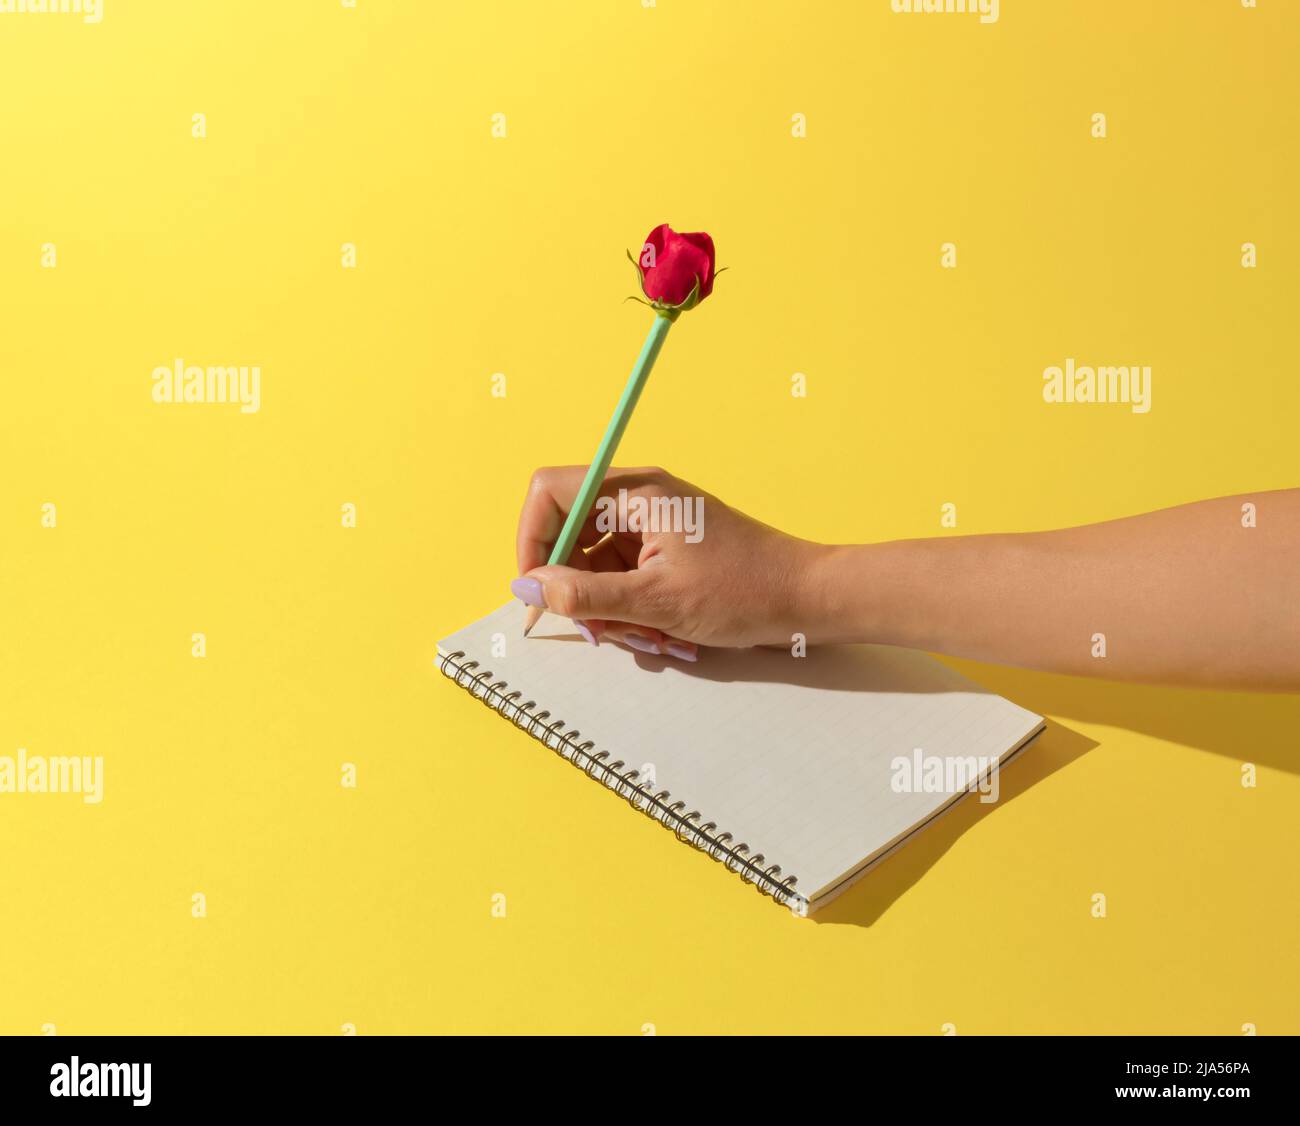 Un carnet scolaire et un crayon avec une rose rouge sur fond jaune. Concept de bus minimal. Banque D'Images